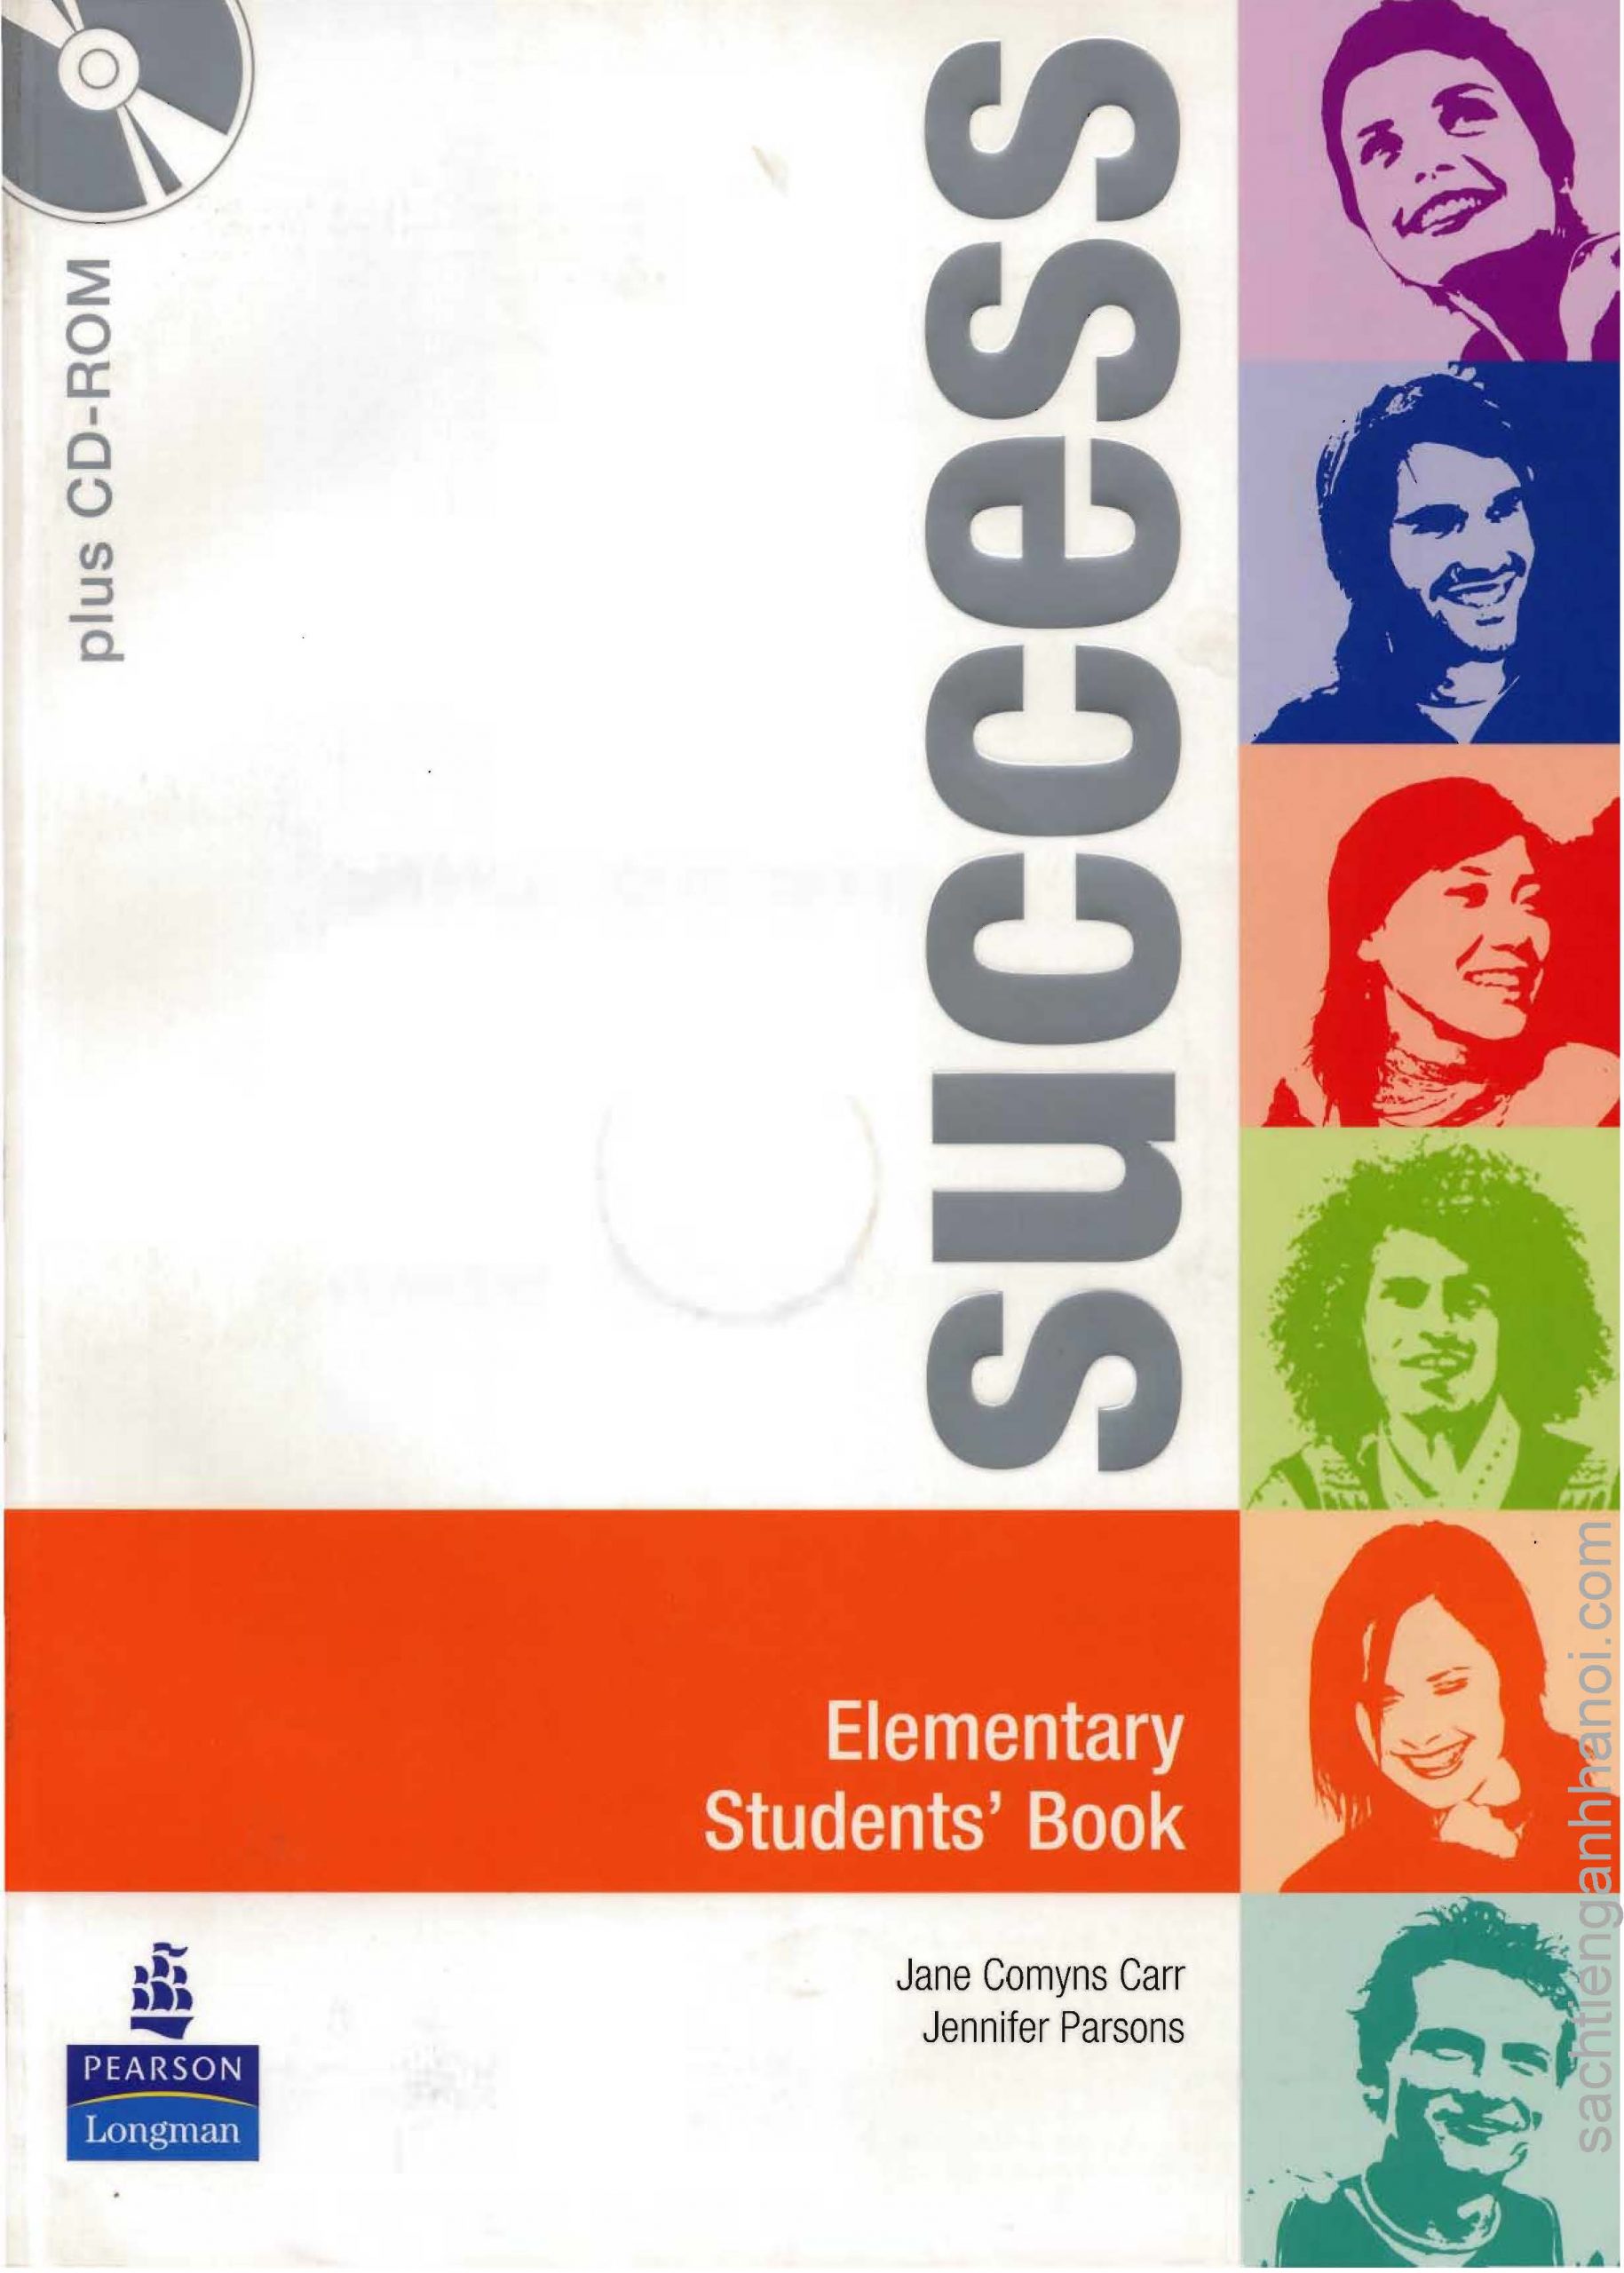 Elementary students book учебник. Success учебник. Elementary student's book. Elementary English учебник. Succeed учебник.